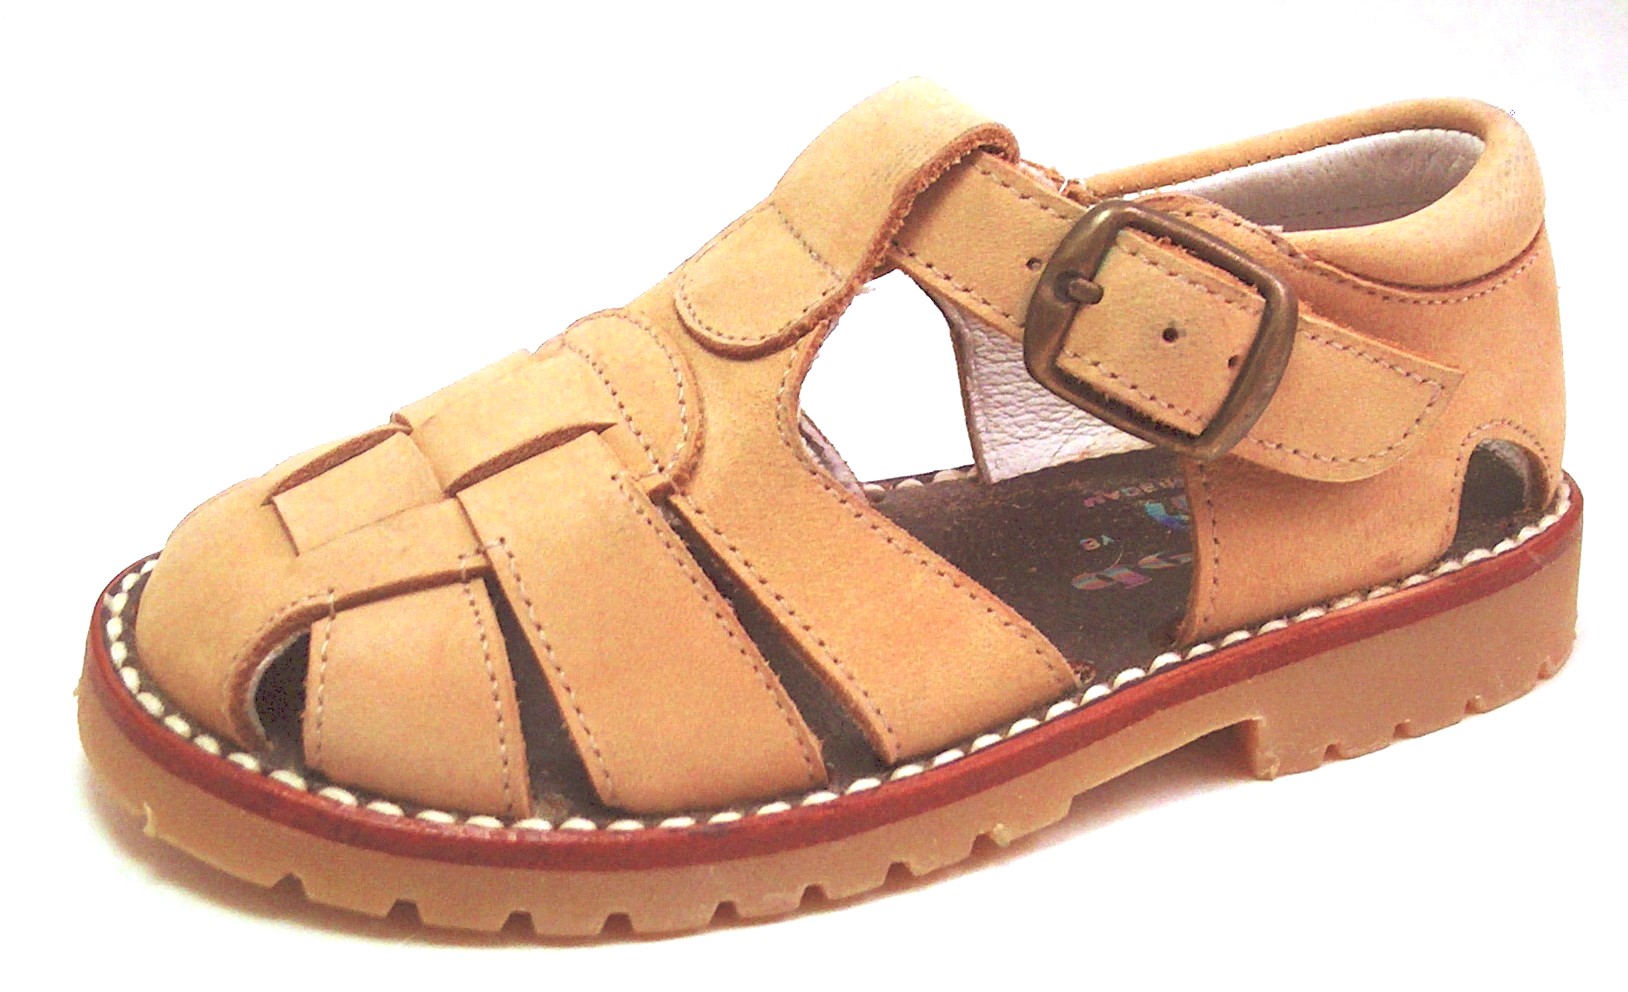 A-7119 - Tan Nubuck Fisherman Sandals